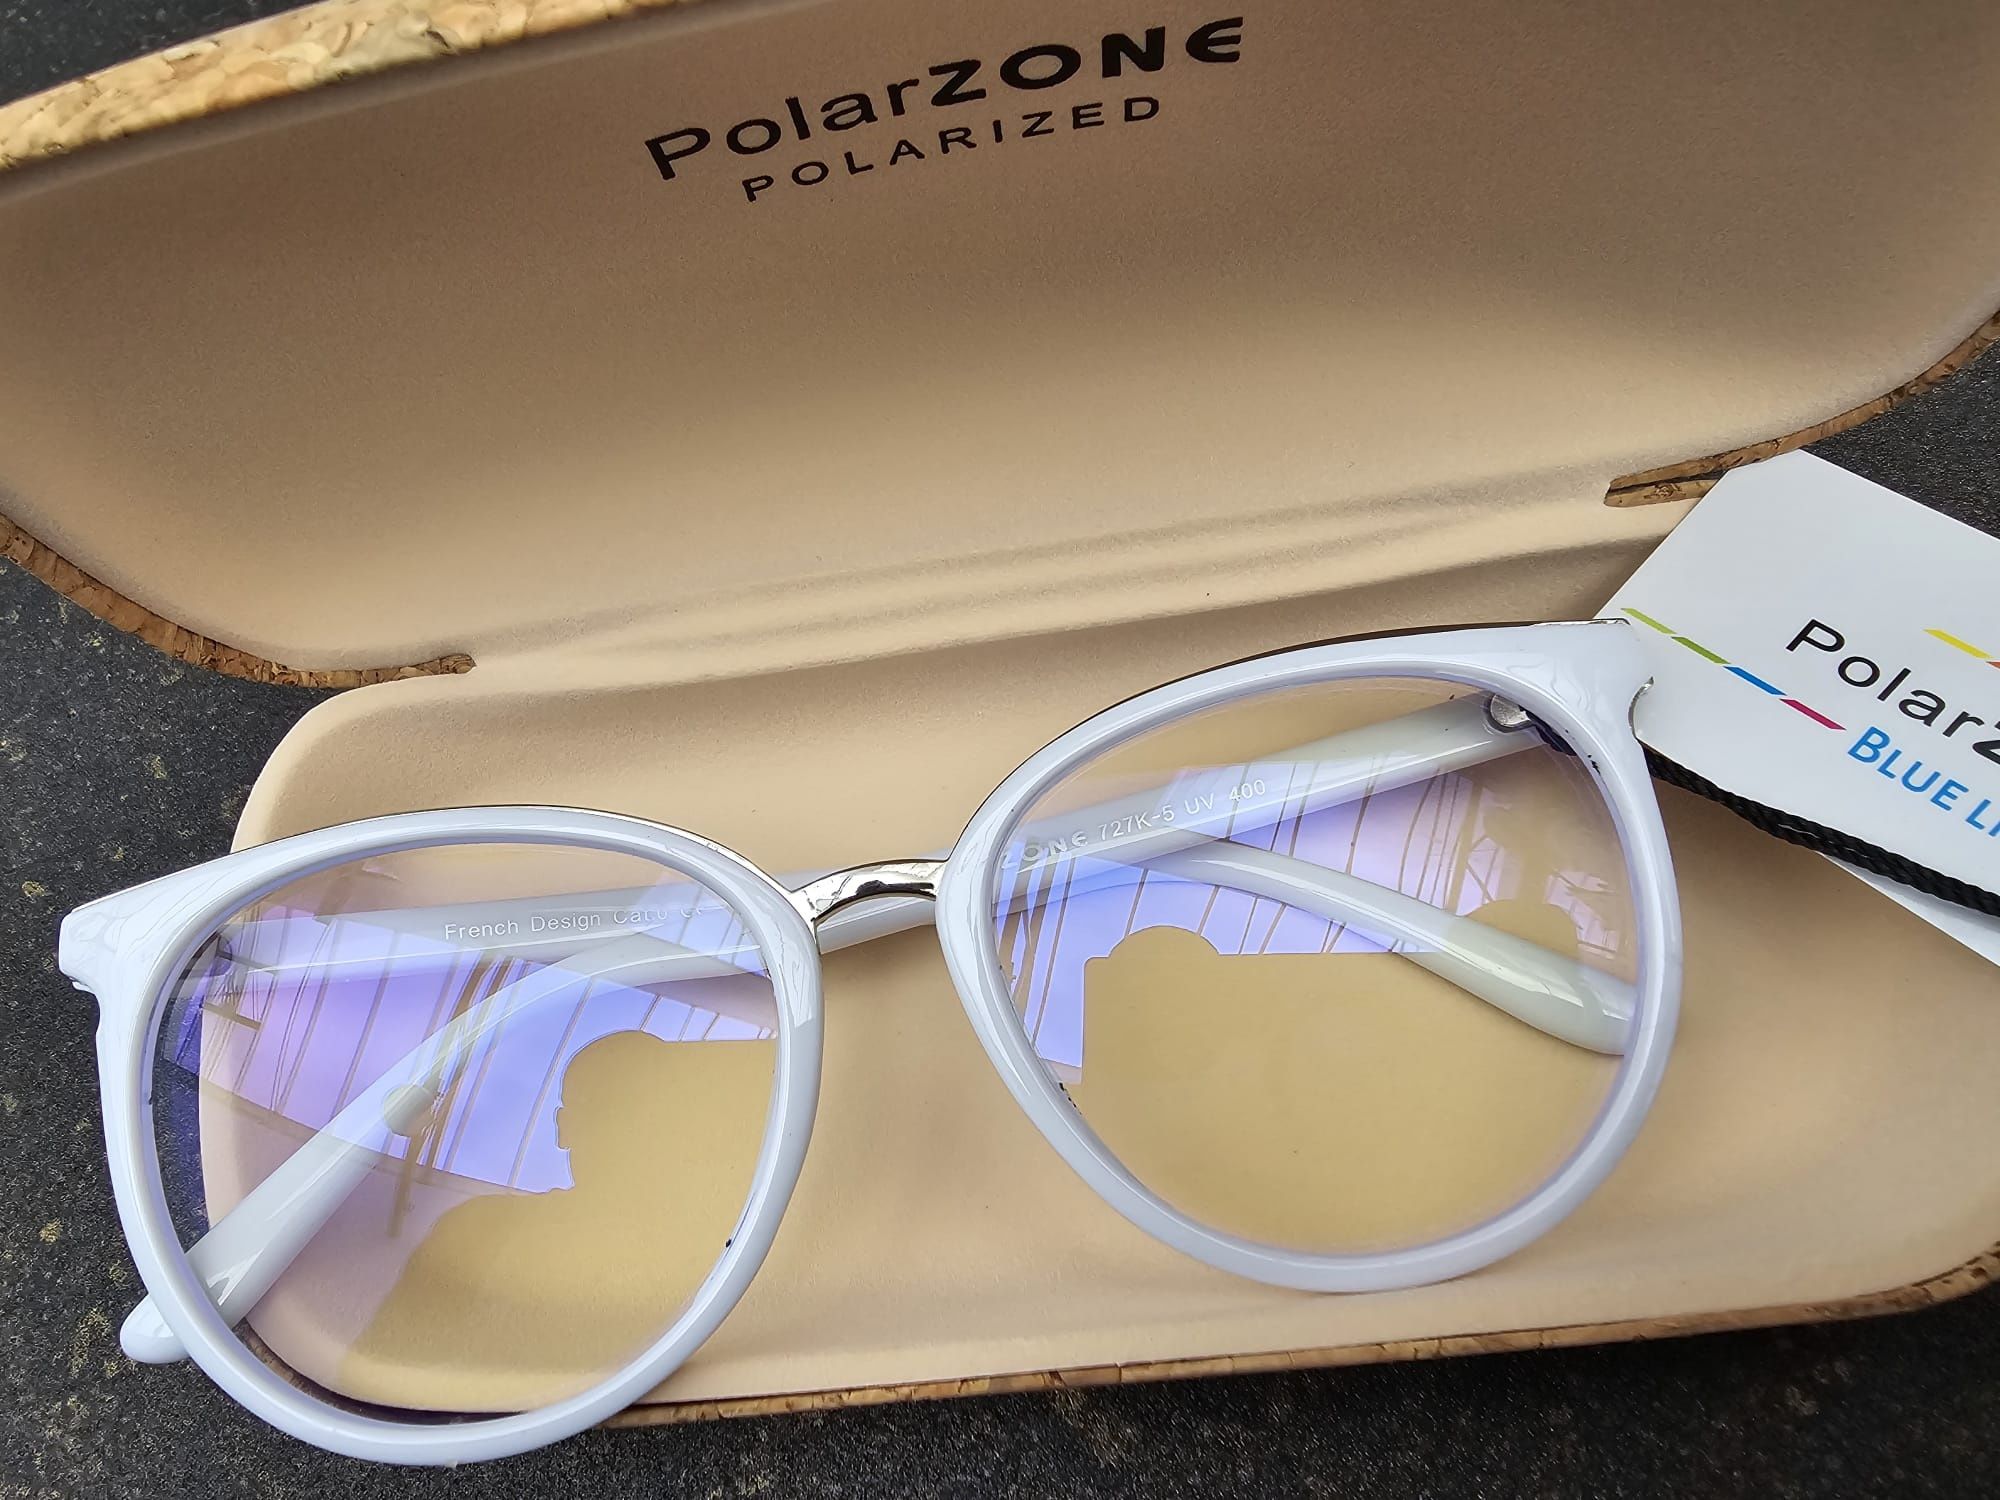 Polarzone okulary damskie zerówki modne nowe